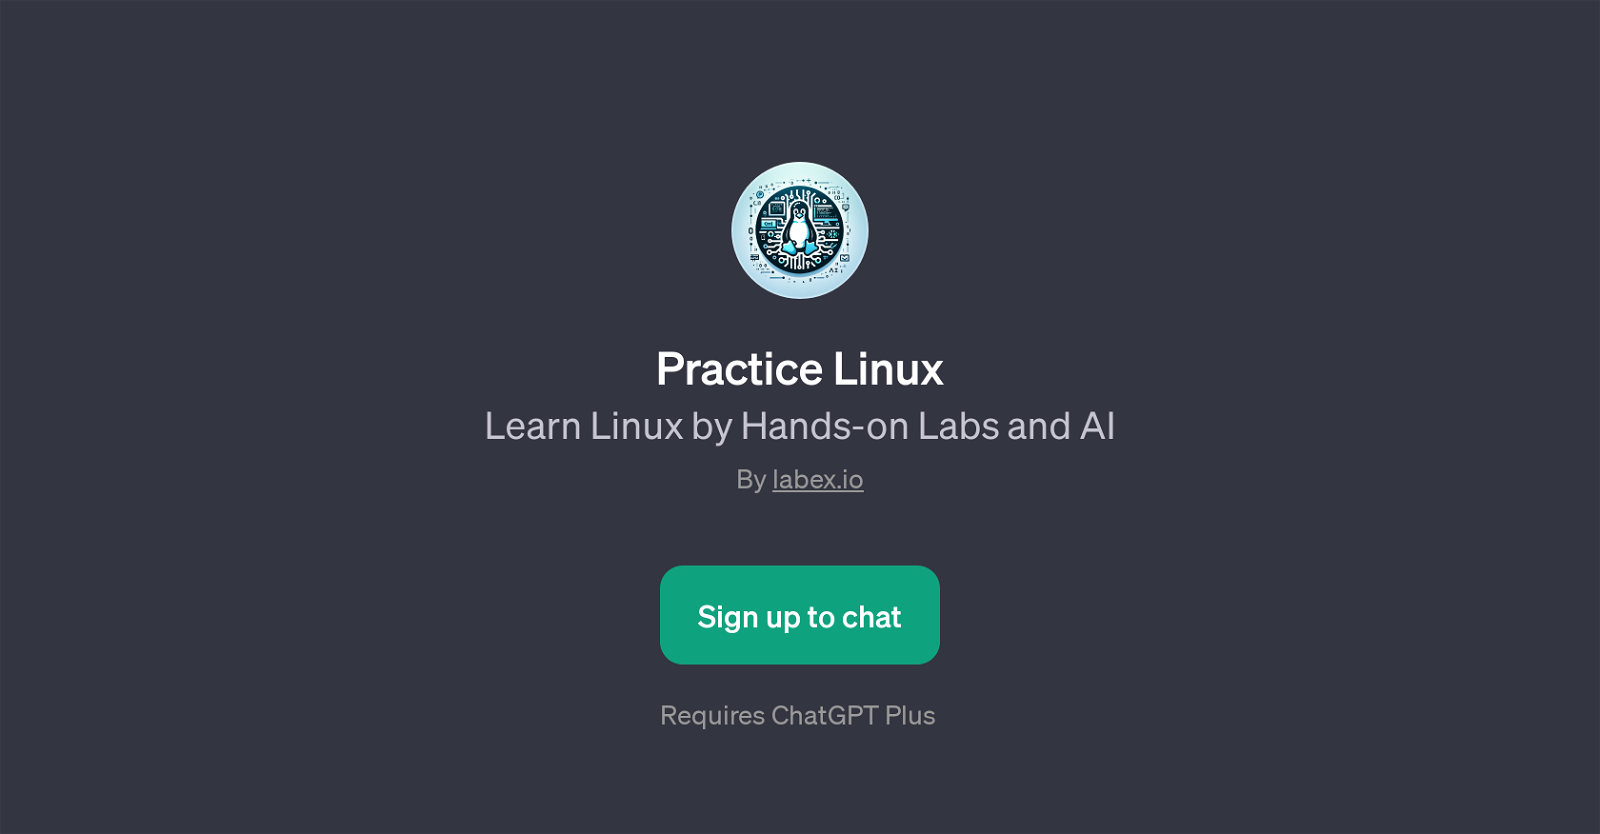 Practice Linux website